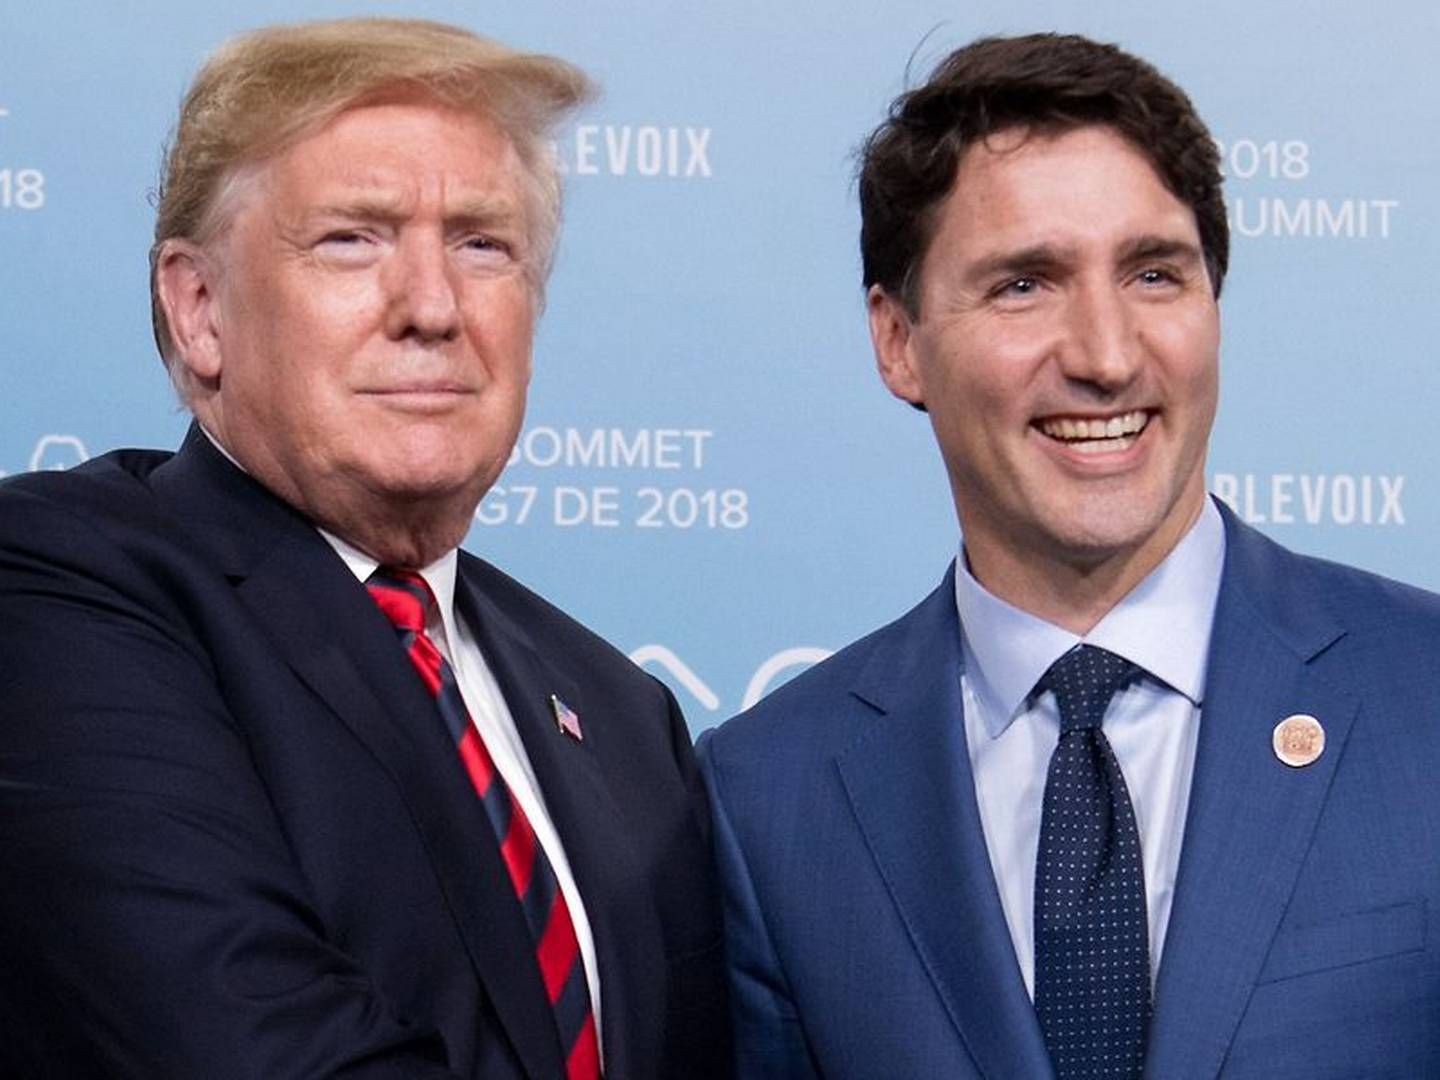 USA's præsident Donald Trump og Canadas premierminister Justin Trudeau mødtes i juni. I dag har de to lande indgået en frihandelsaftale, som også inkluderer Mexico. | Foto: Saul Loeb/Ritzau Scanpix